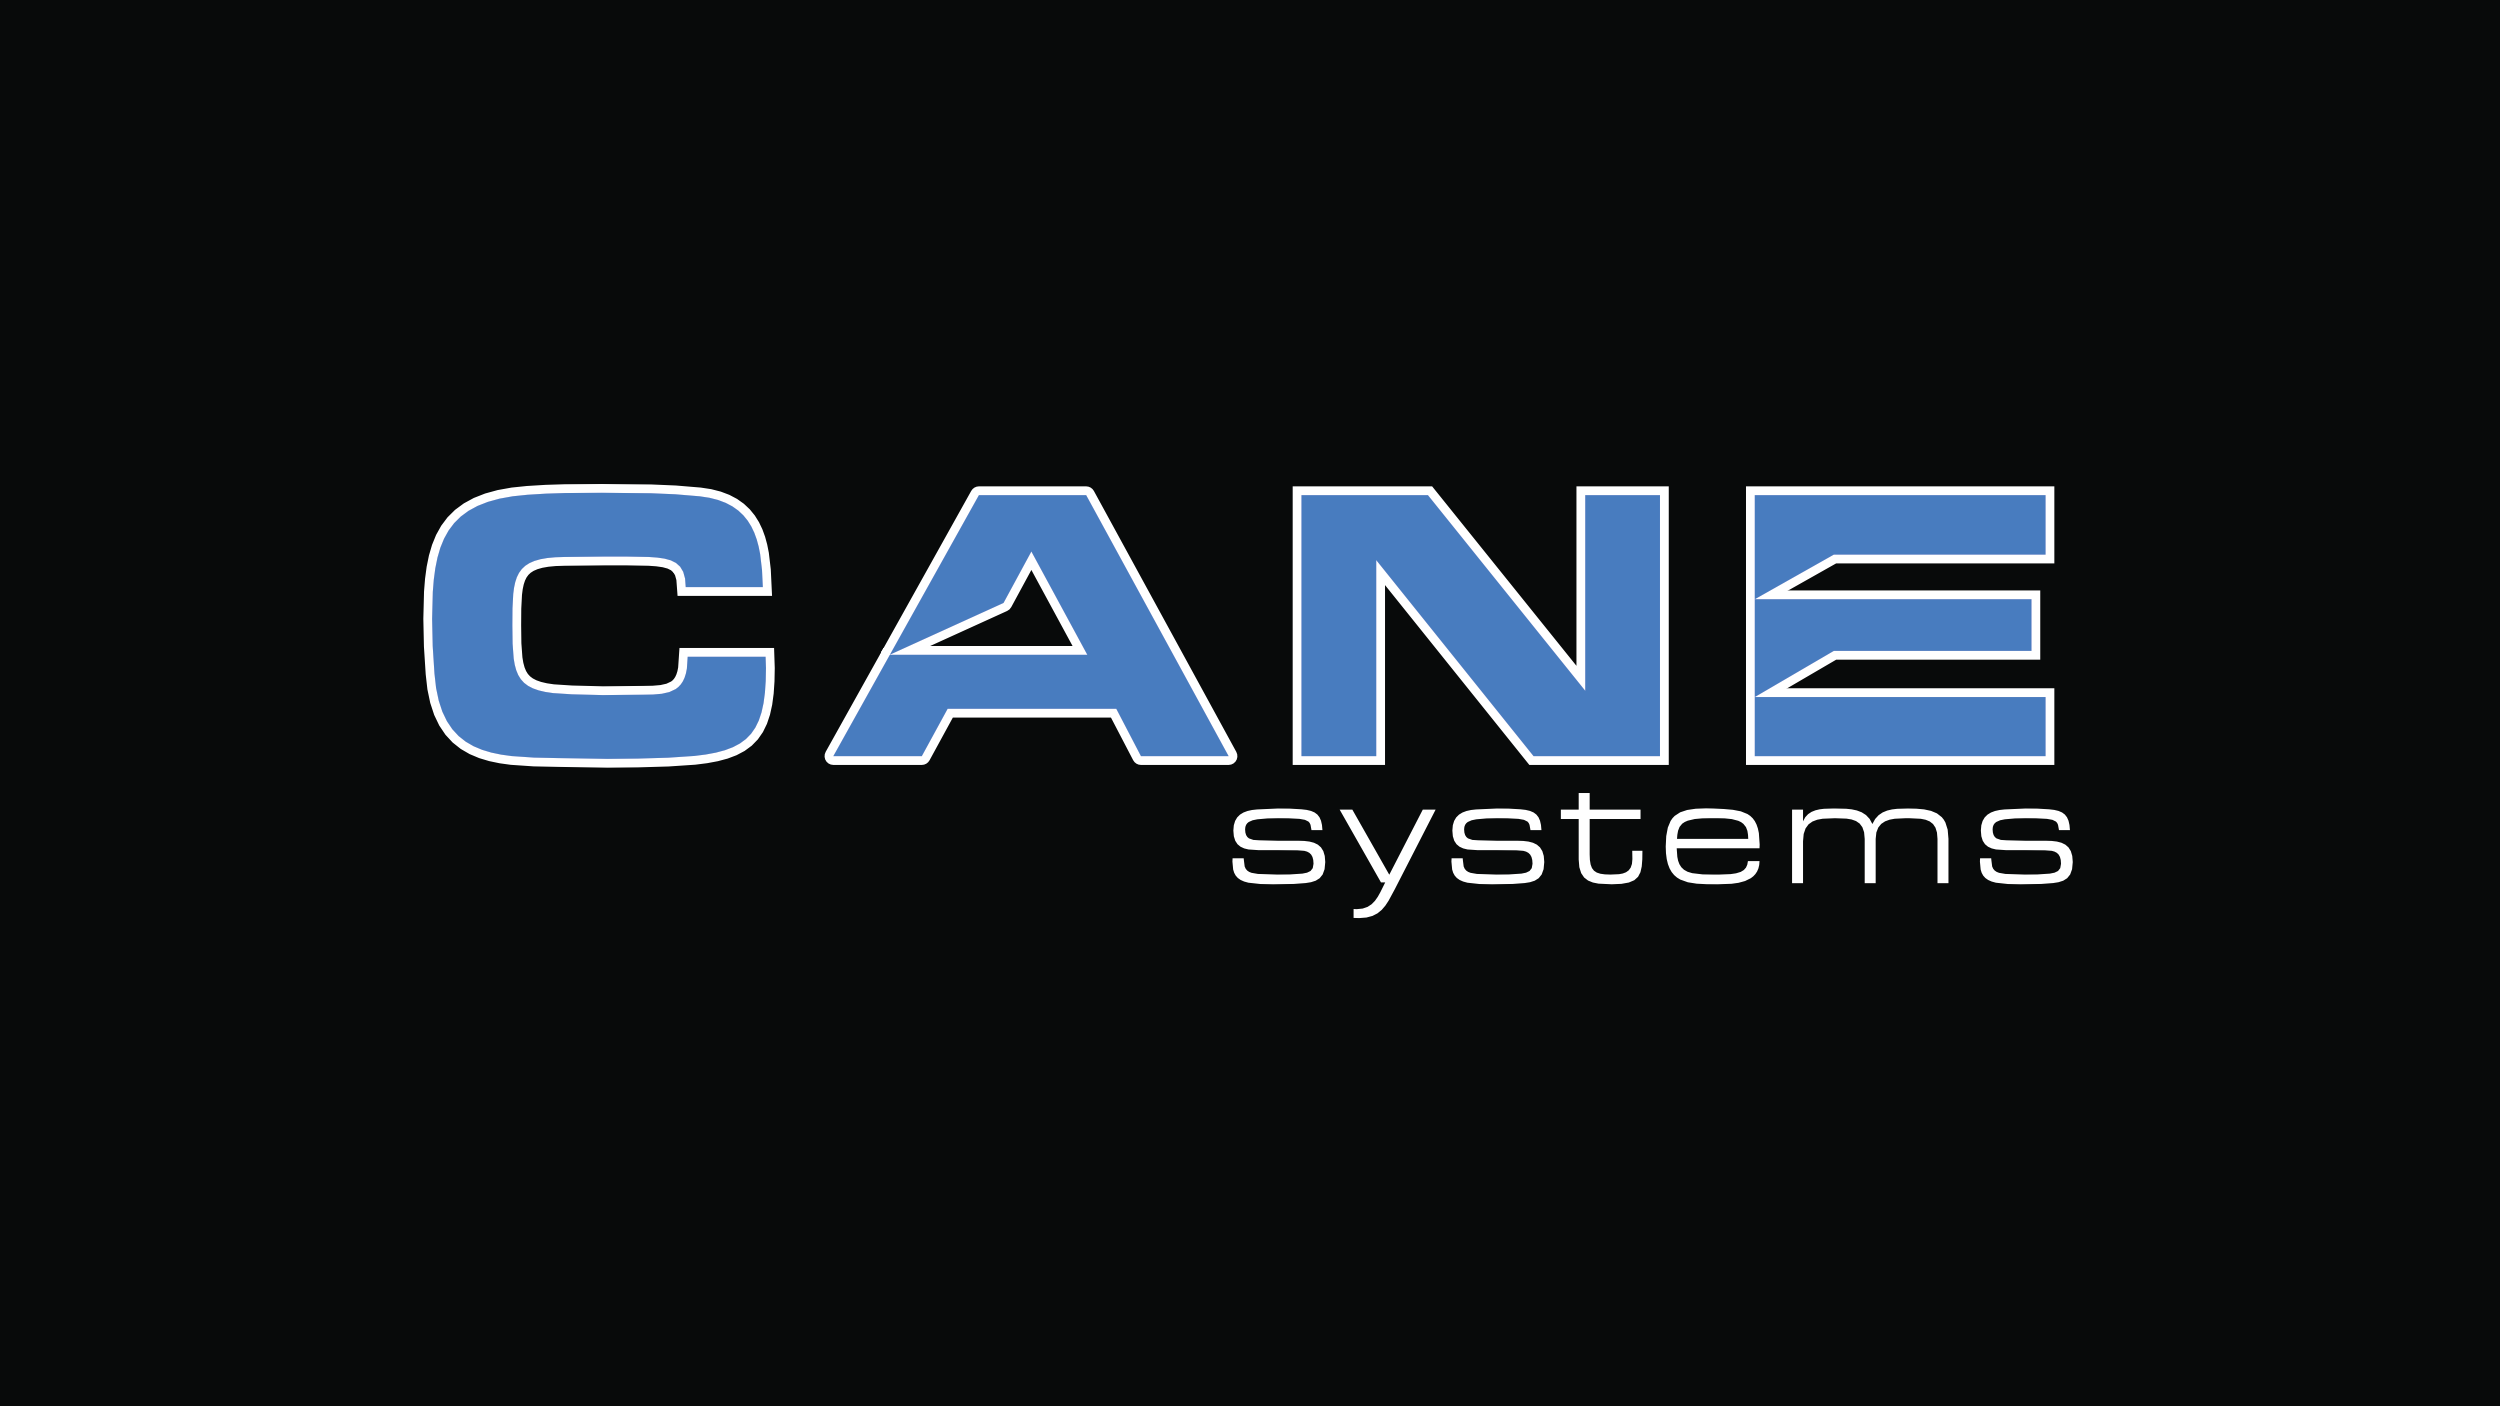 cane-systems-llc-5b9424d7